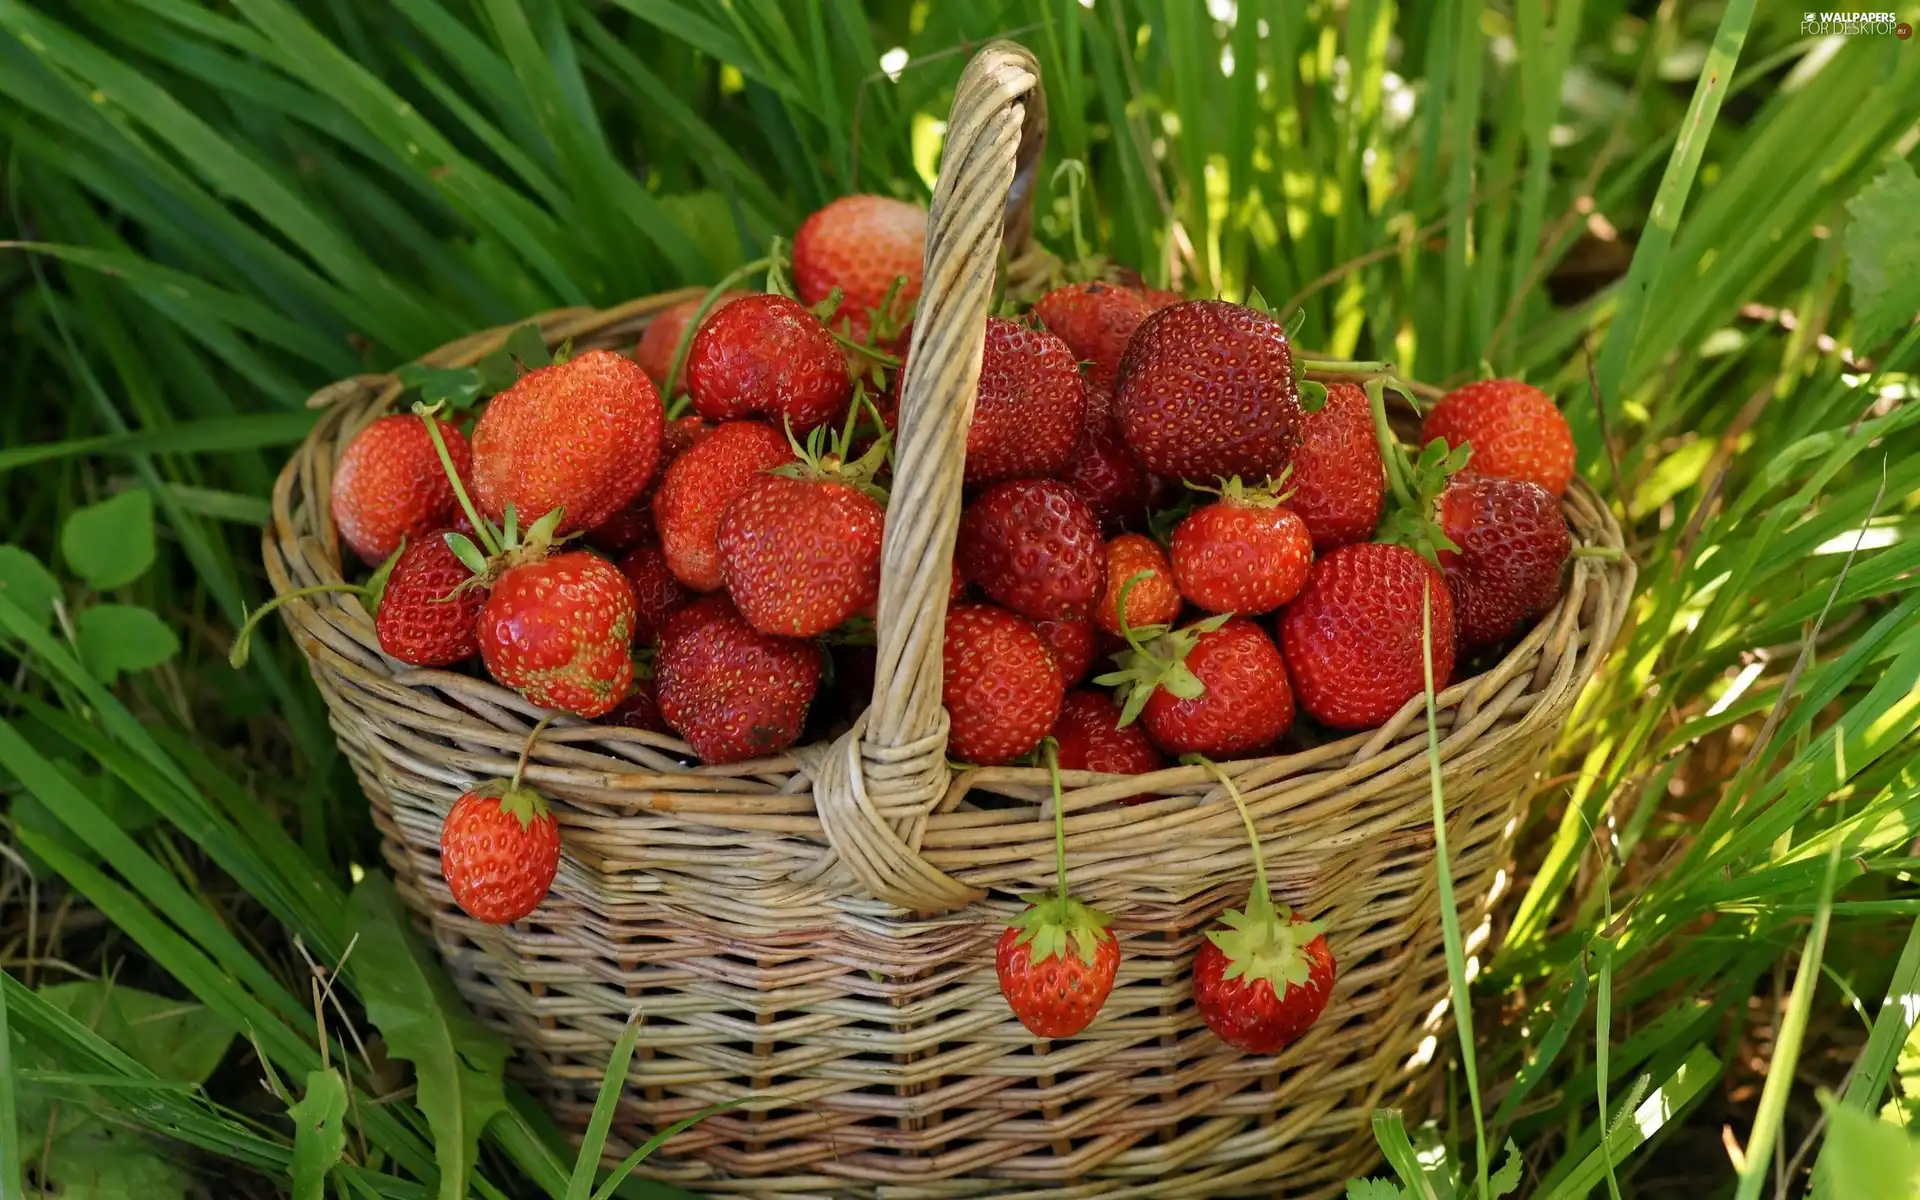 strawberries, grass, basket